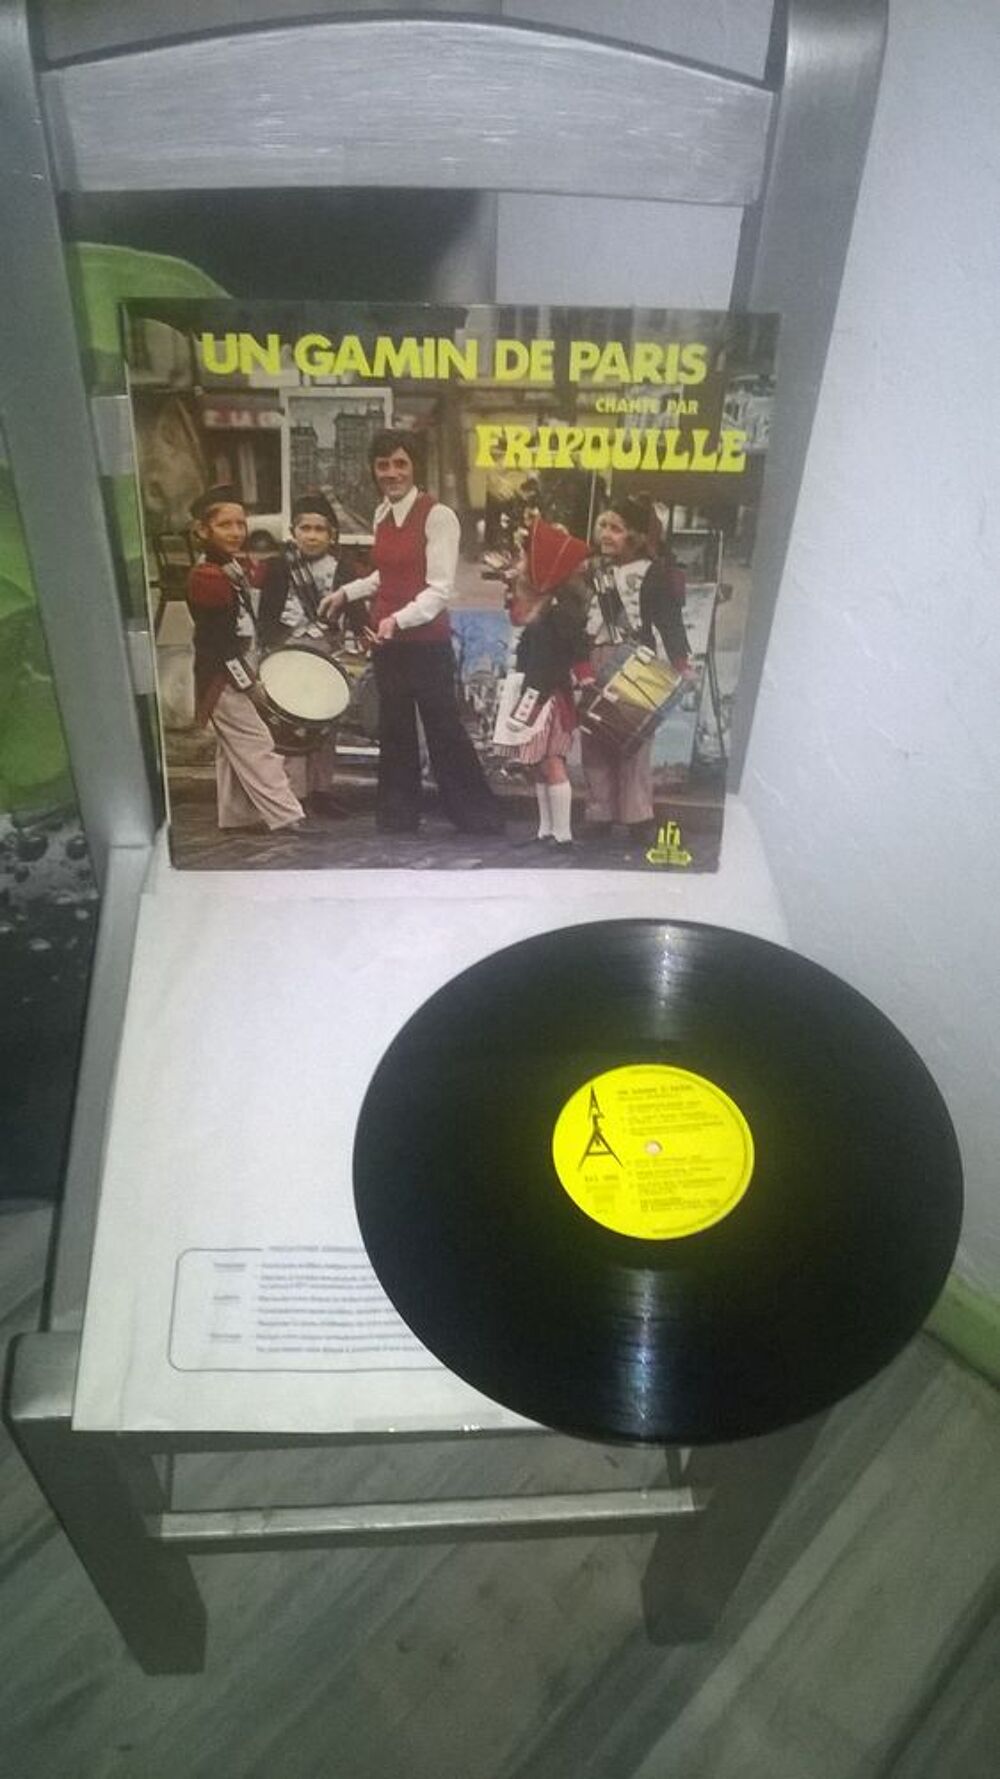 Vinyle Fripouille
Un Gamin De Paris
Excellent etat
Un Gam CD et vinyles